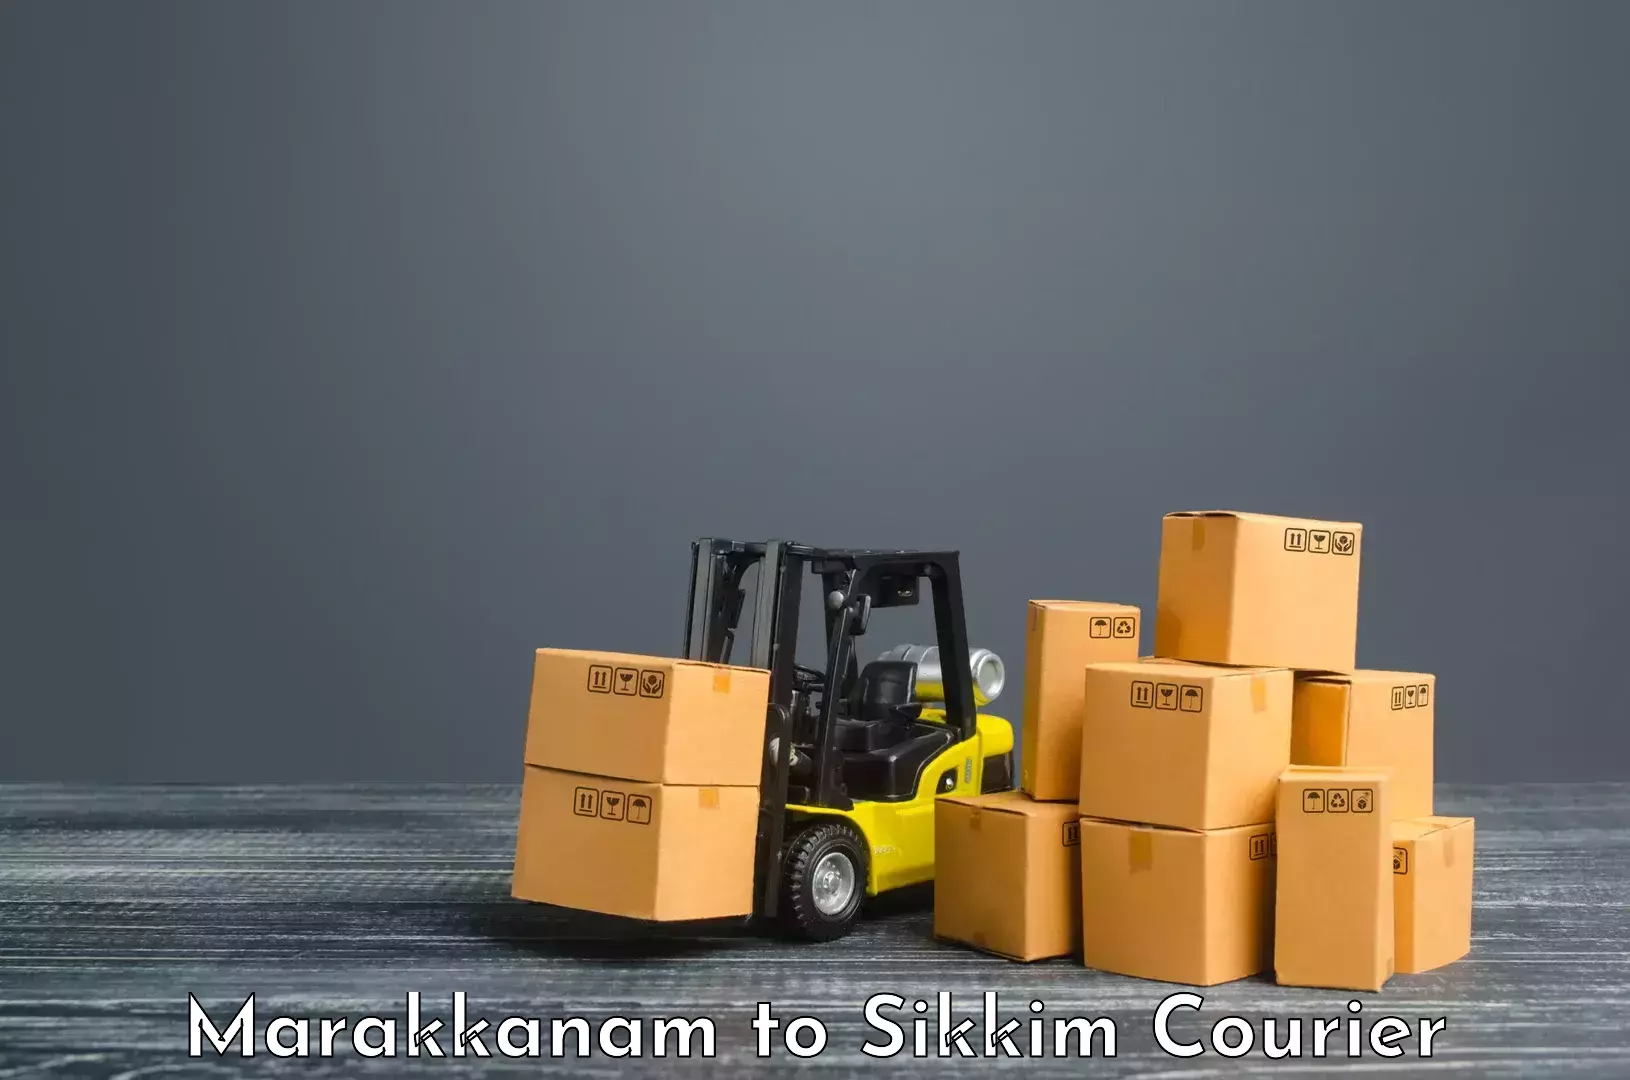 Premium courier services Marakkanam to Pelling